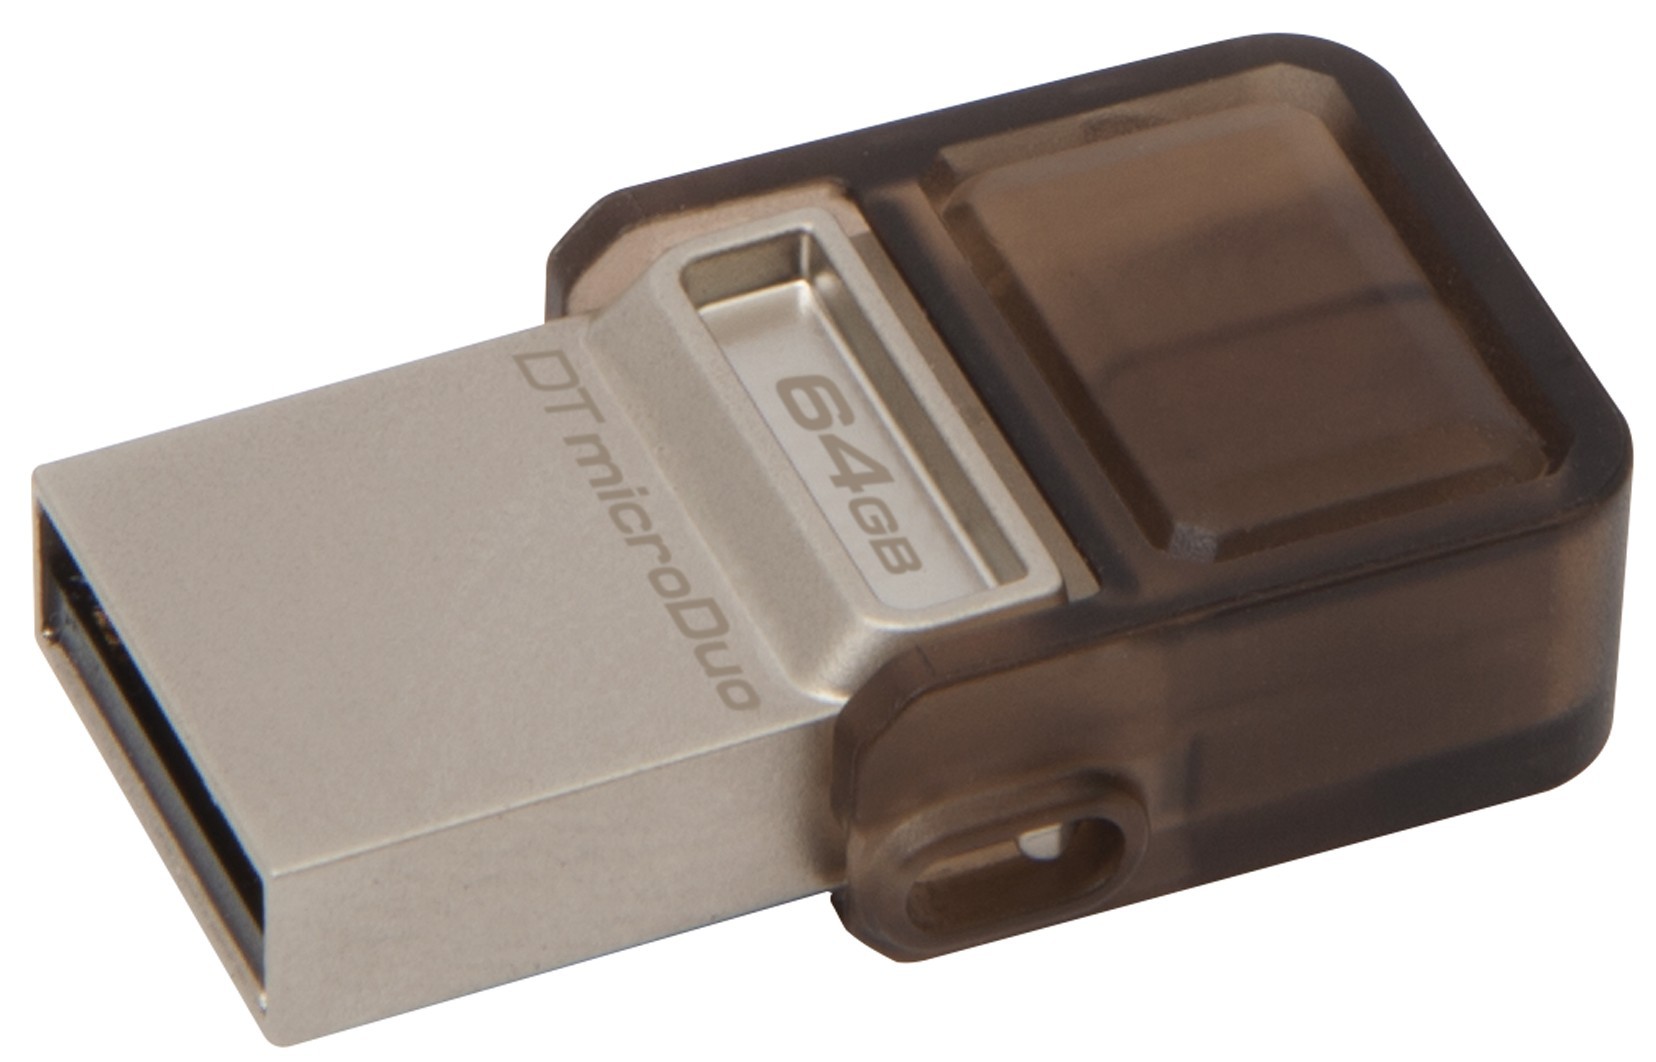 Сравнительное тестирование флешек стандарта USB On The Go